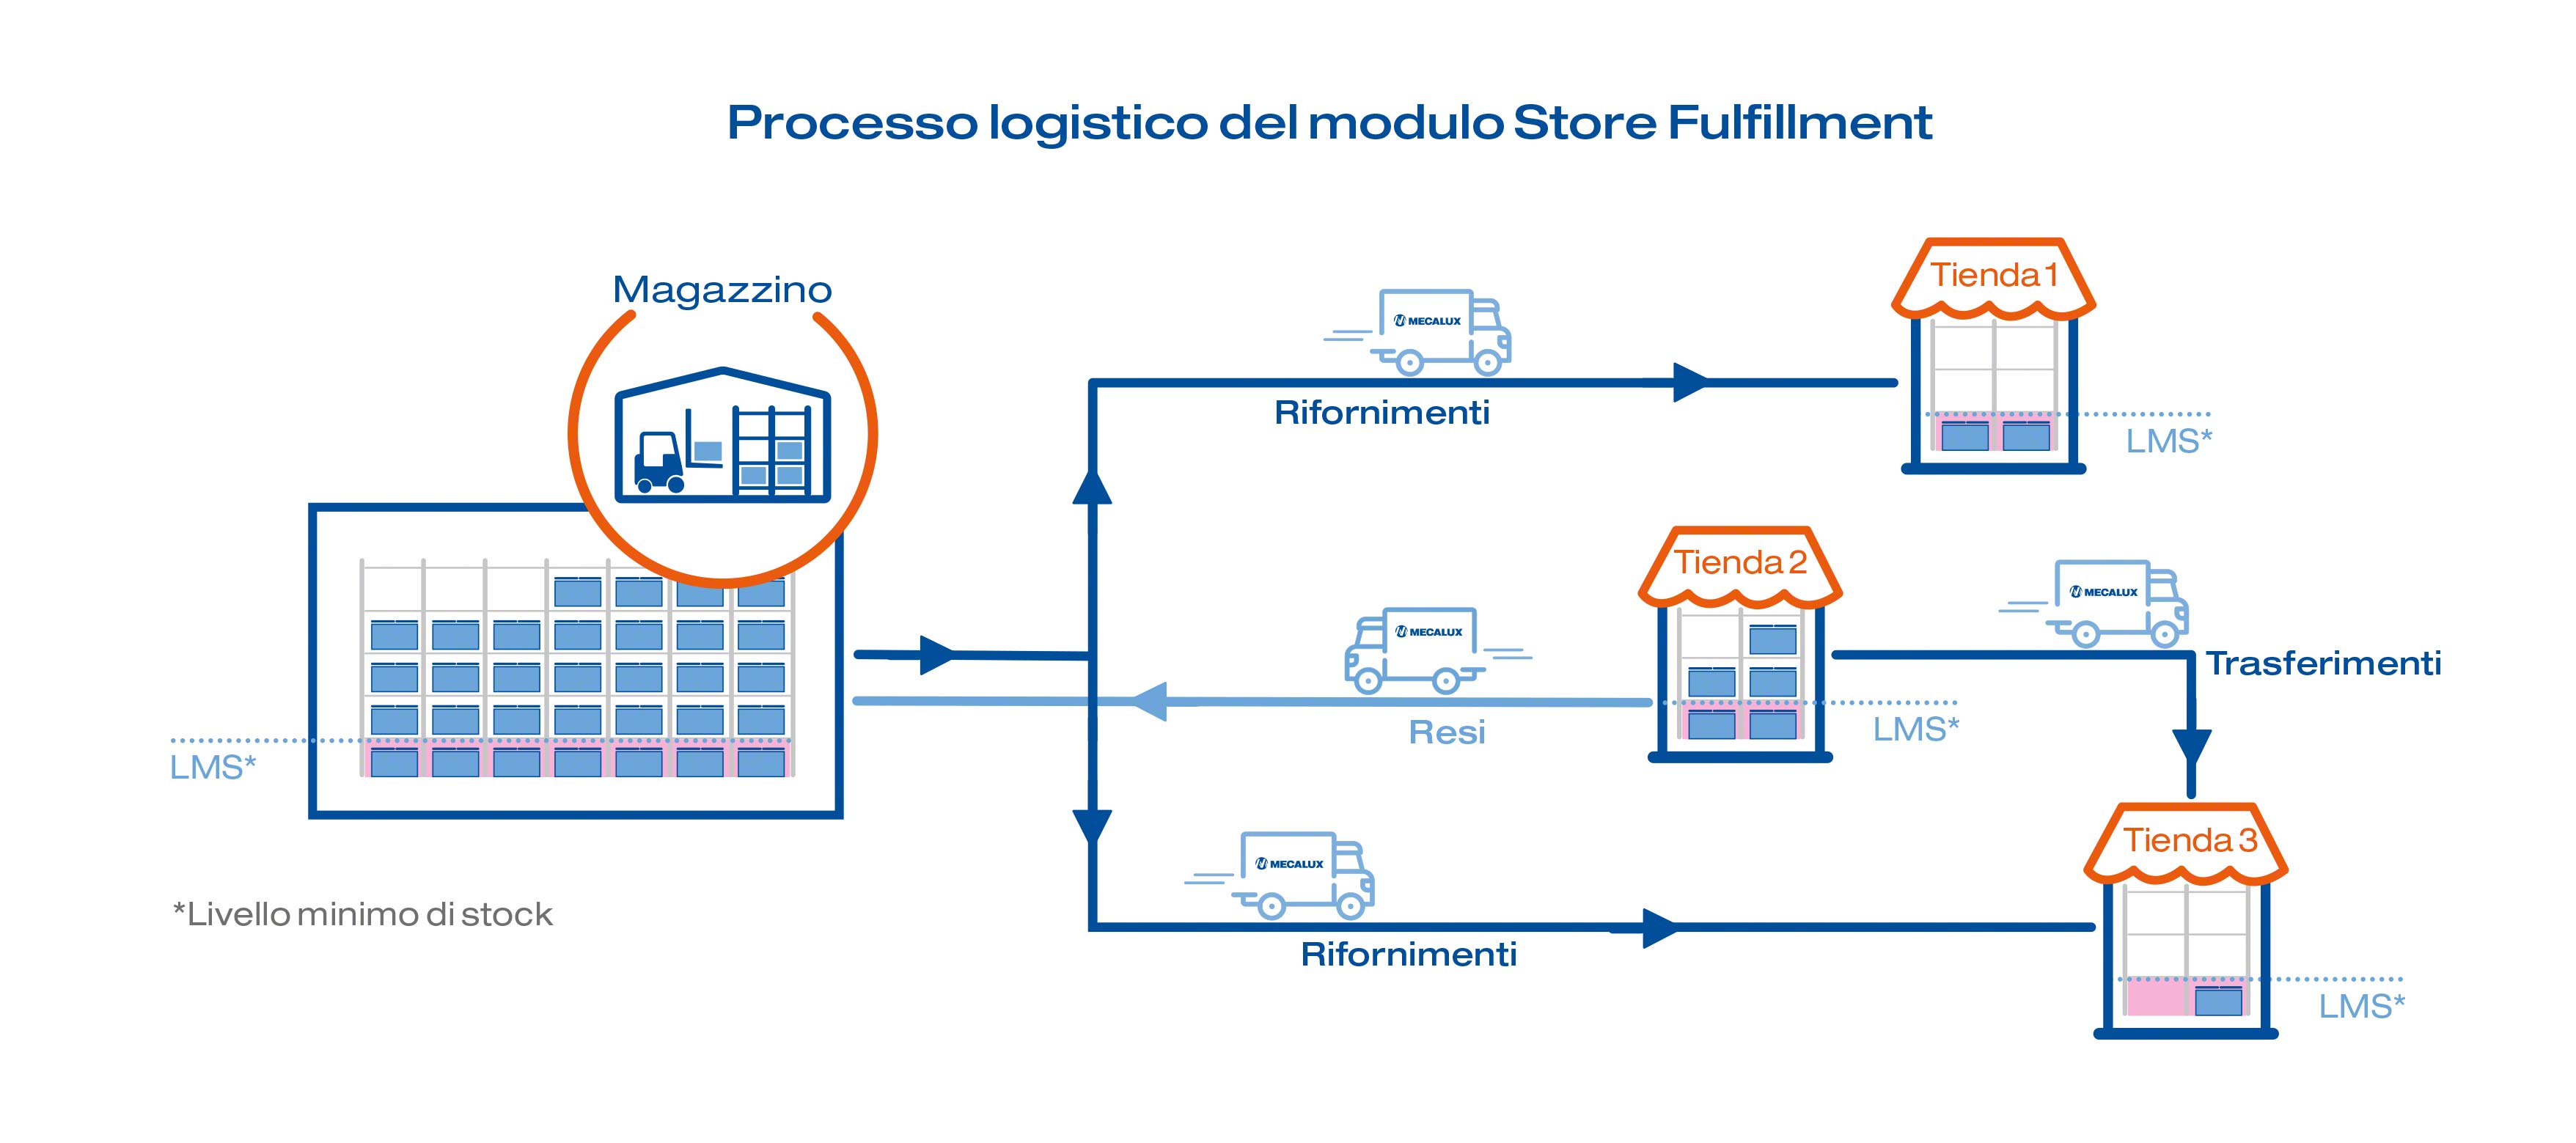 Processo logistico del modulo Store Fulfillment